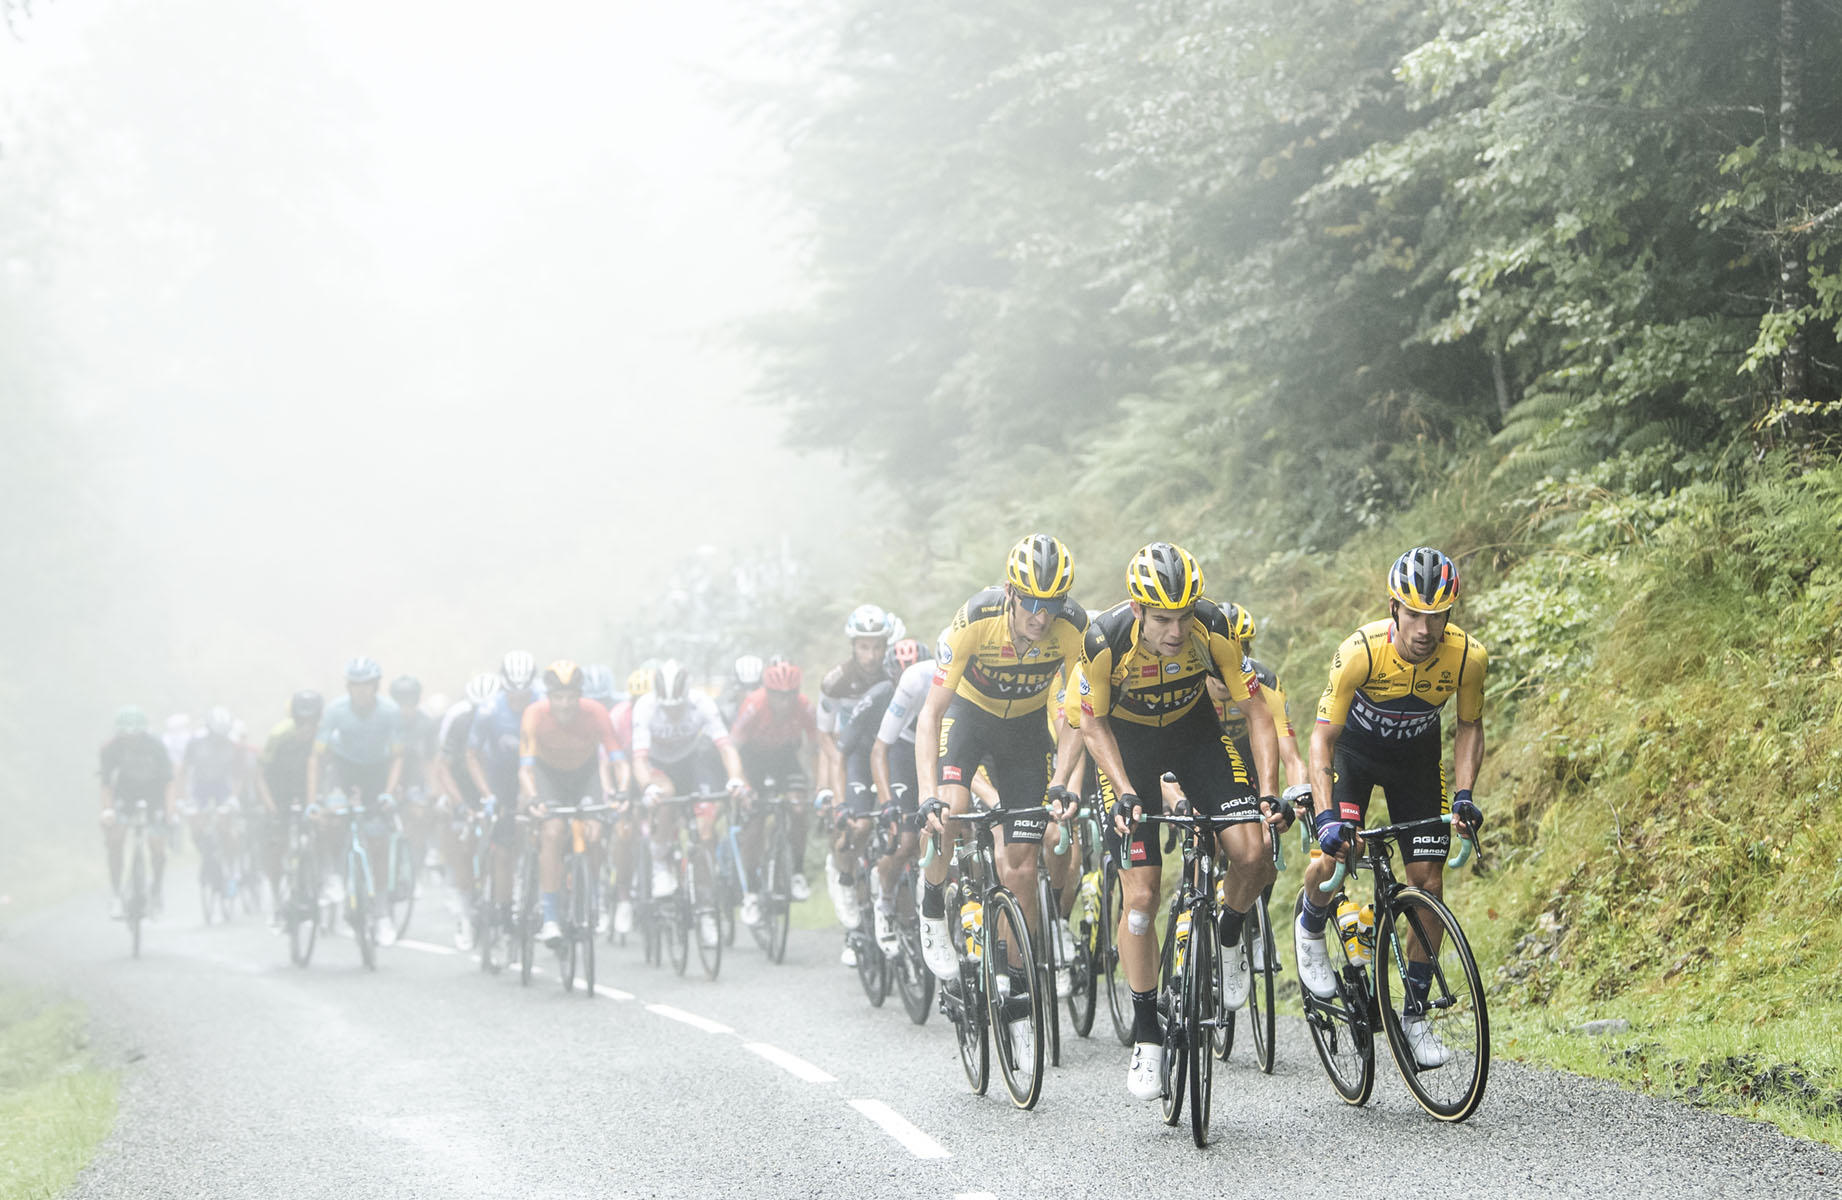 Tour de France 2020 - Stage Nine - The peloton climbs Col de la Hourcere